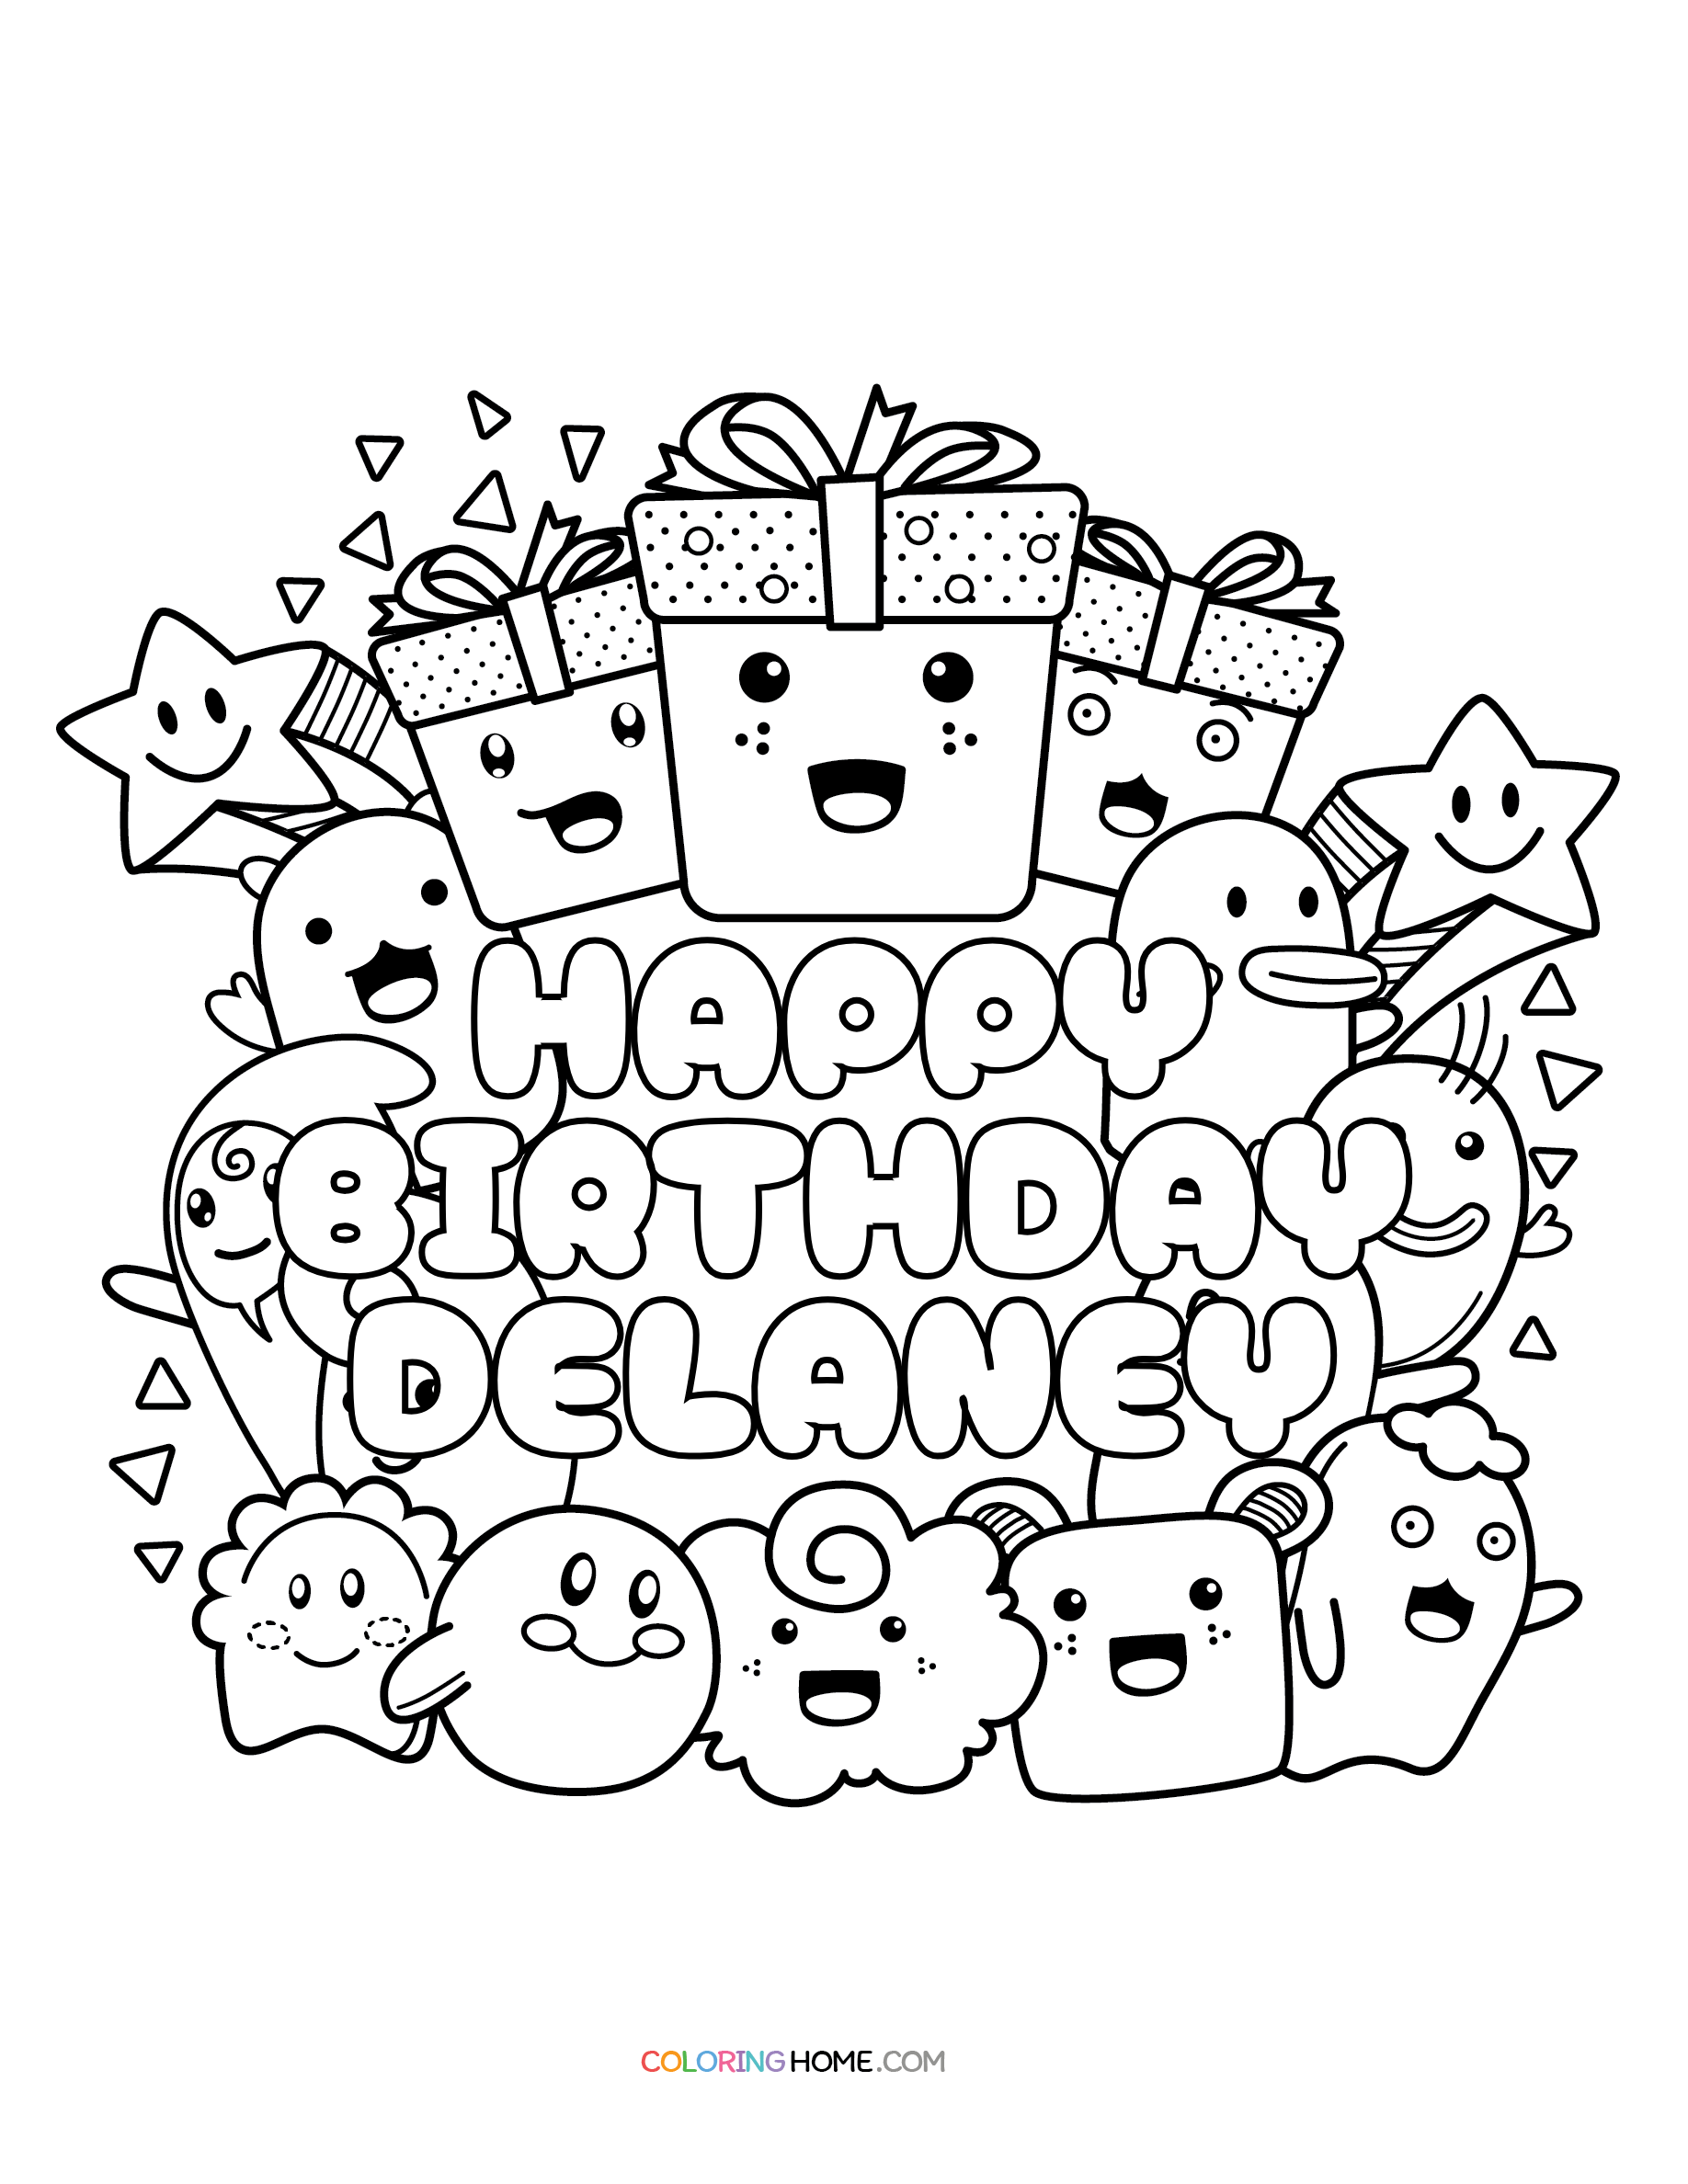 Happy Birthday Delaney coloring page